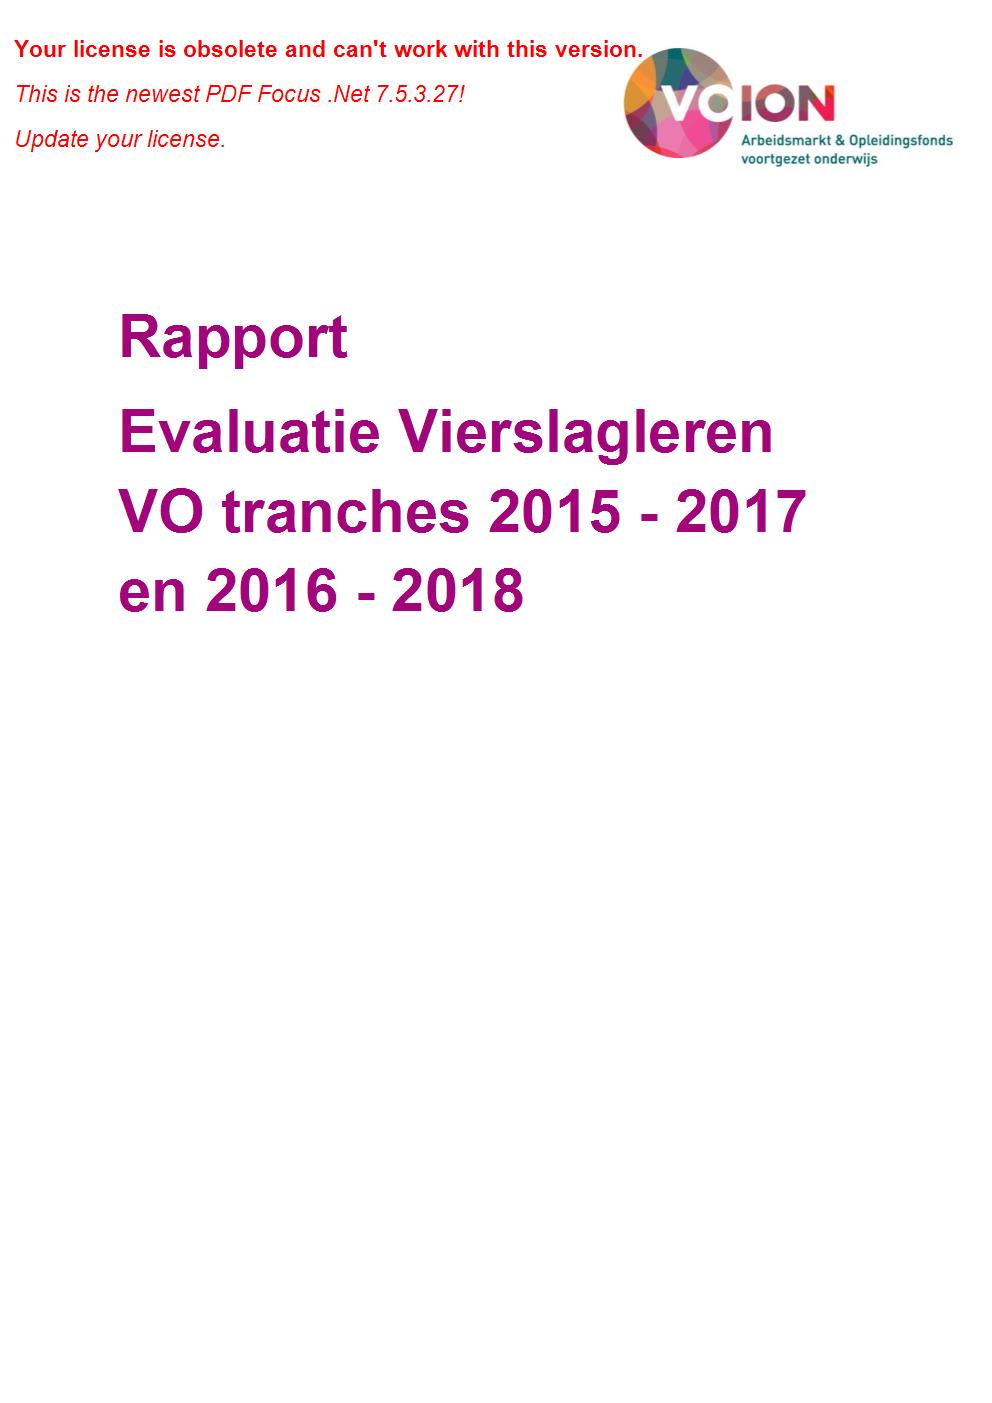 Evaluatie Vierslagleren VO 2015 2018